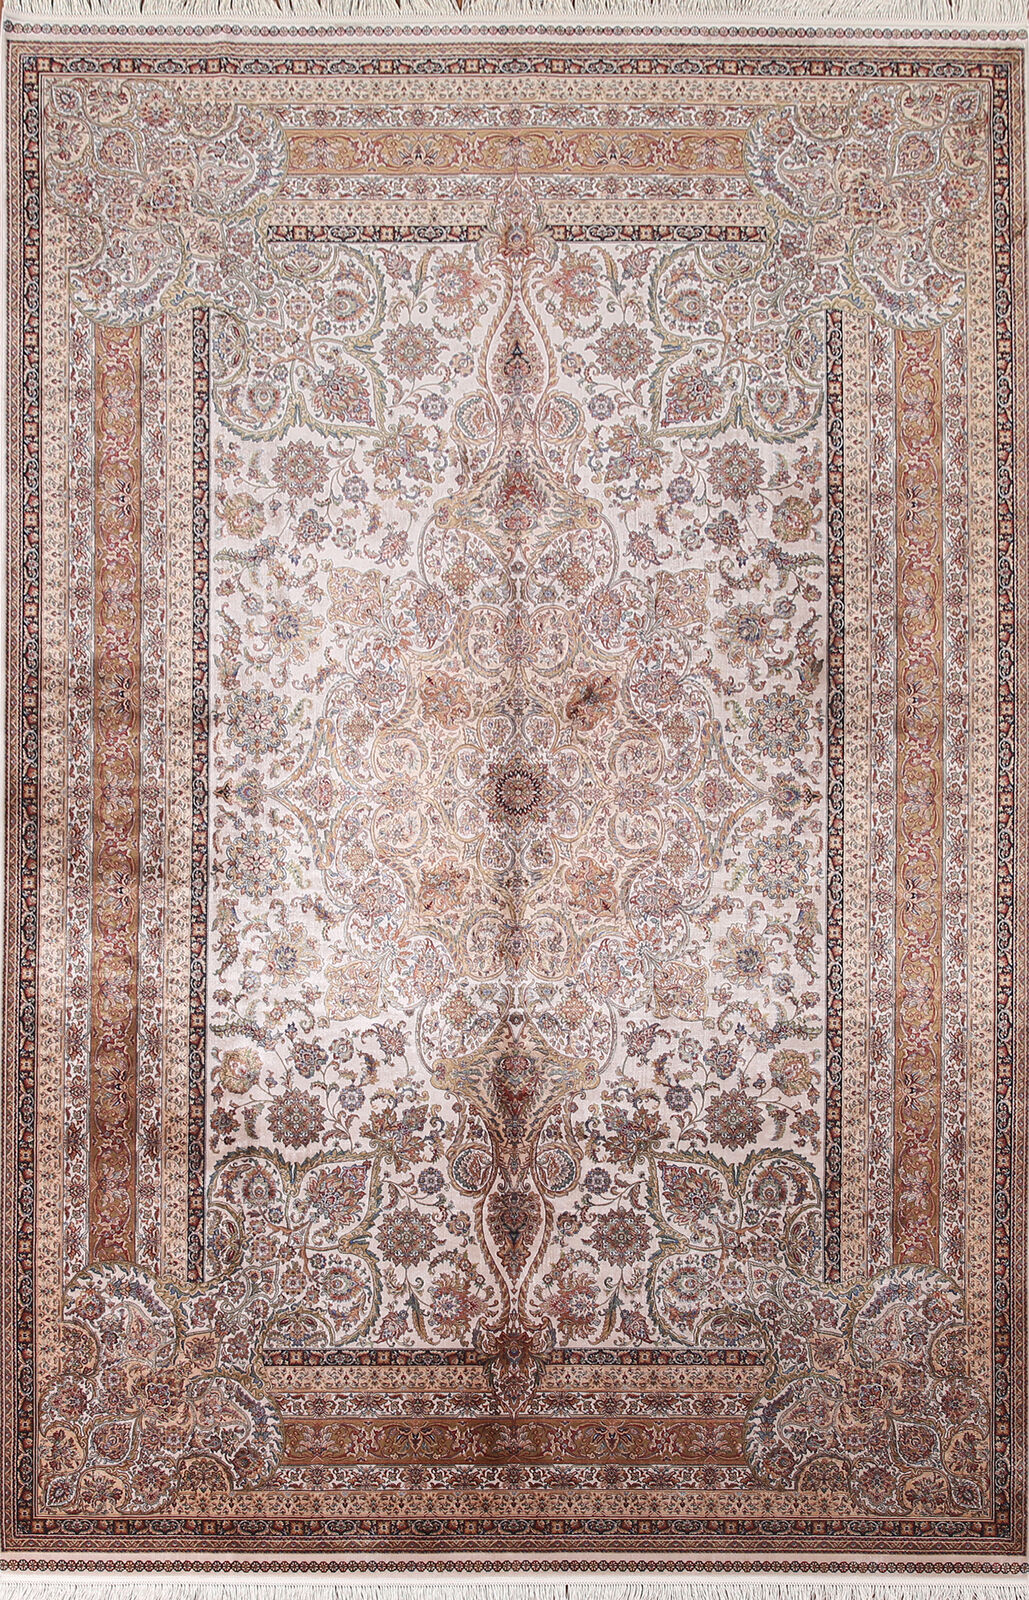 Silk Living Room Turkish Floral Ivory 7x10 ft Area Rug Soft Pile Carpet